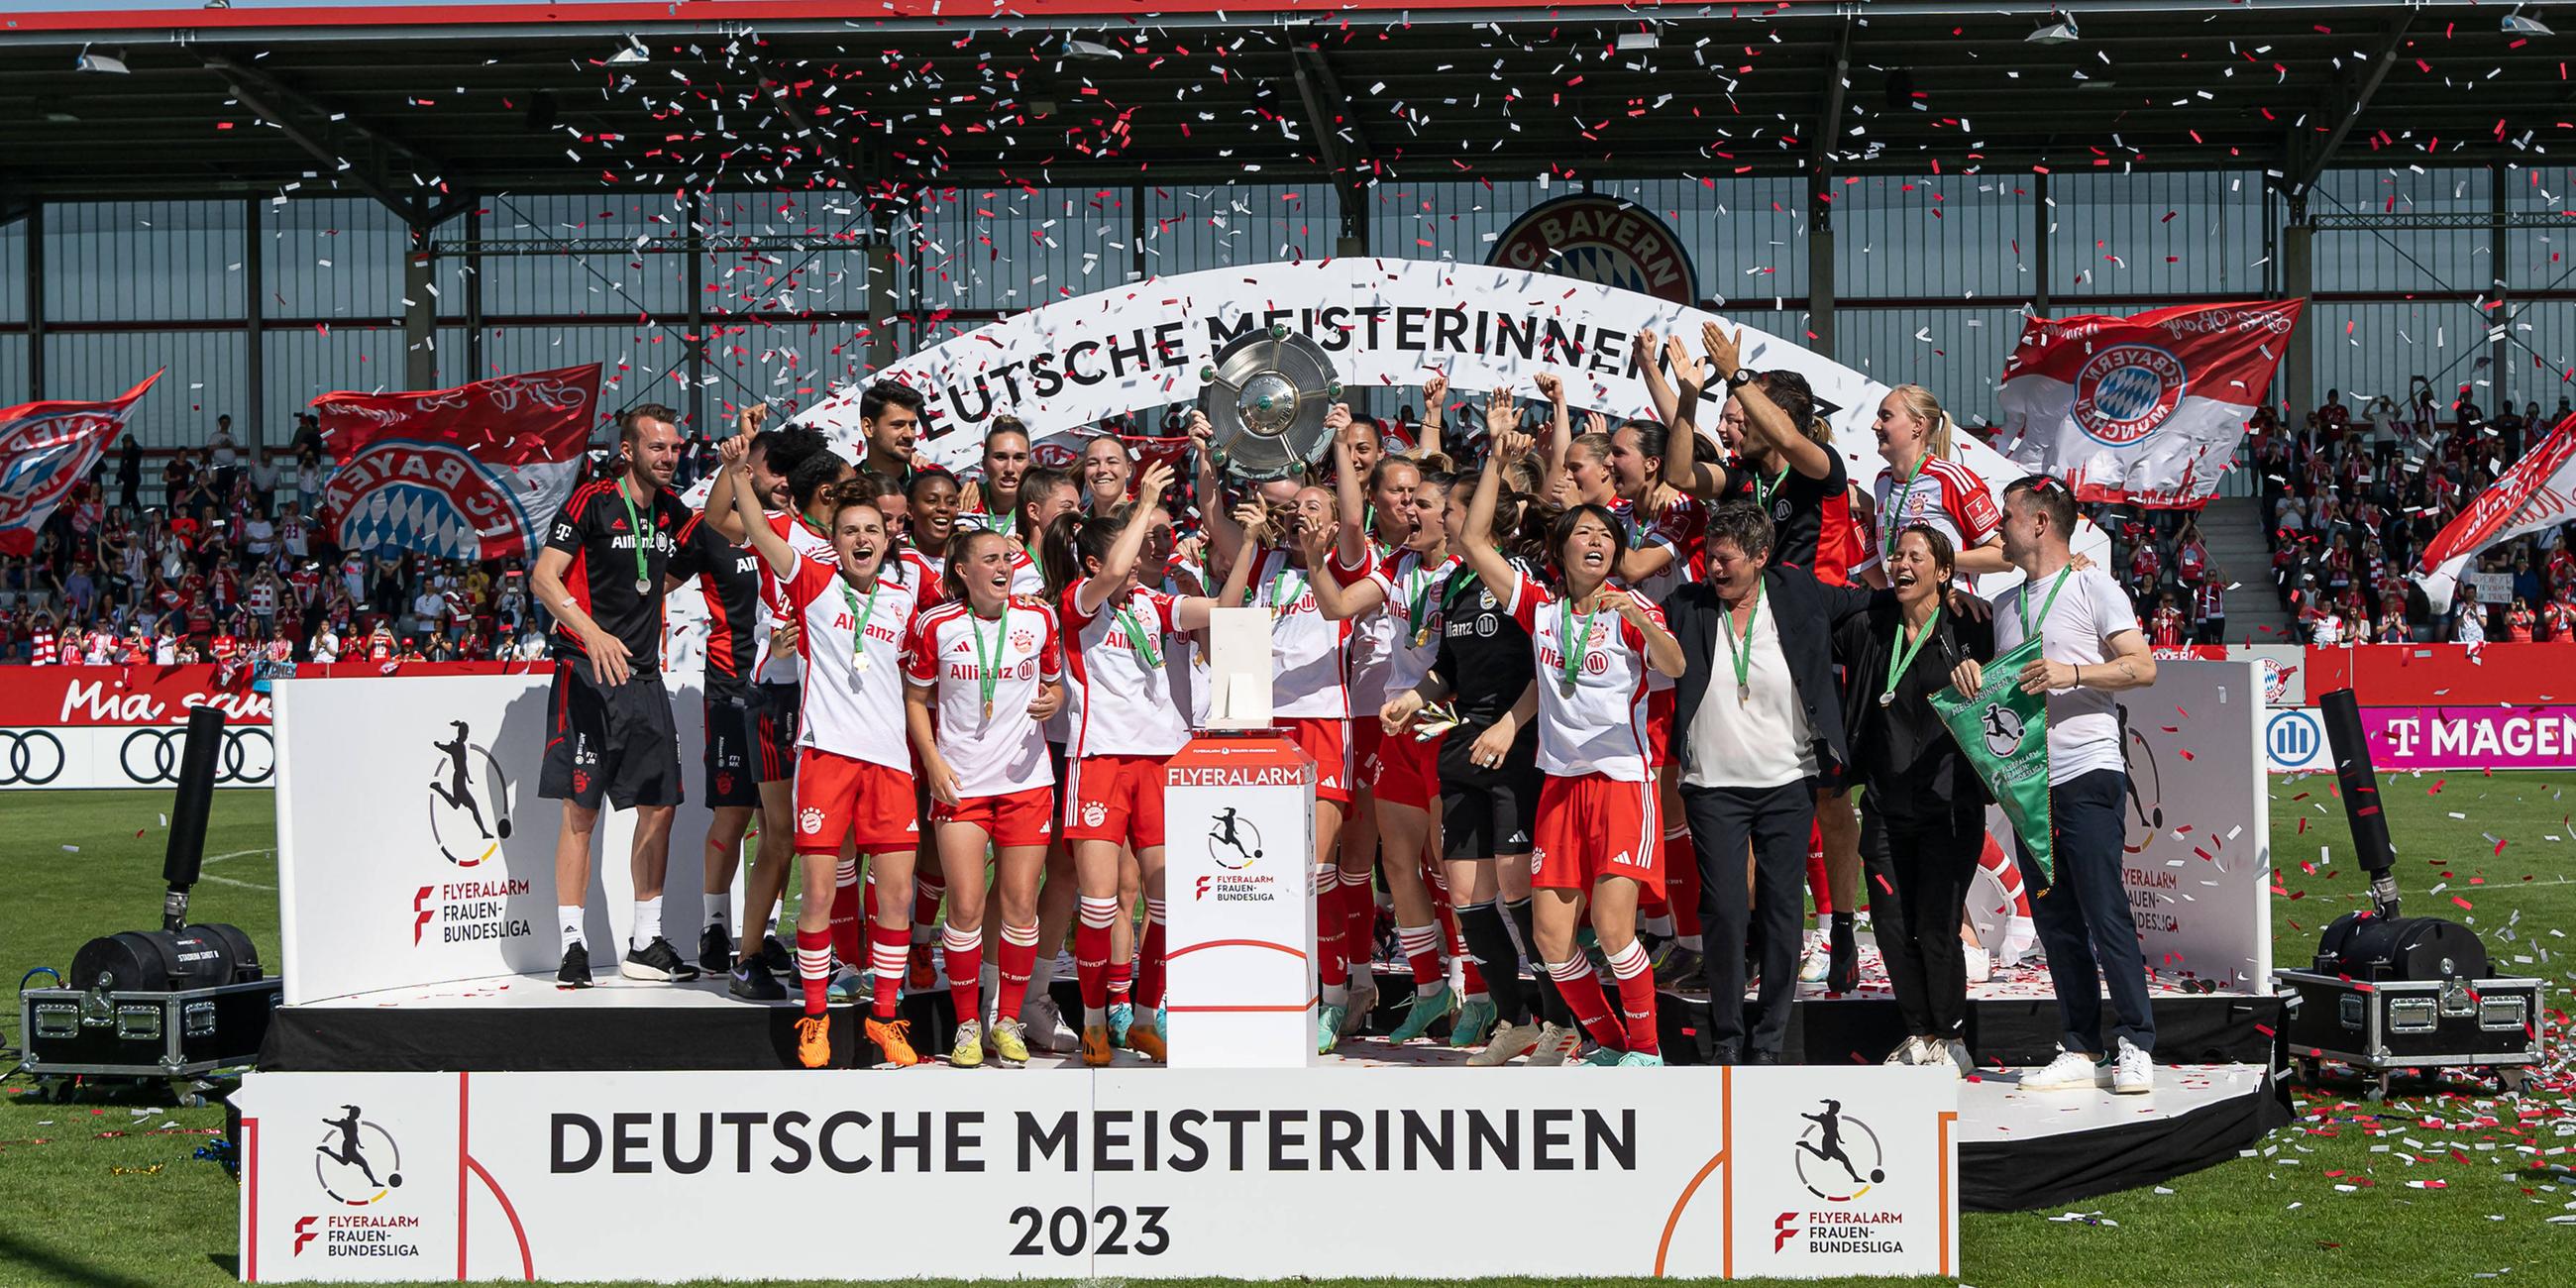 Frauen-Bundesliga, 22. Spieltag, Saison 2022/2023, 28.05.2023, Potsdam, Bayern München Frauen auf dem Siegerpodest mit Meisterschale